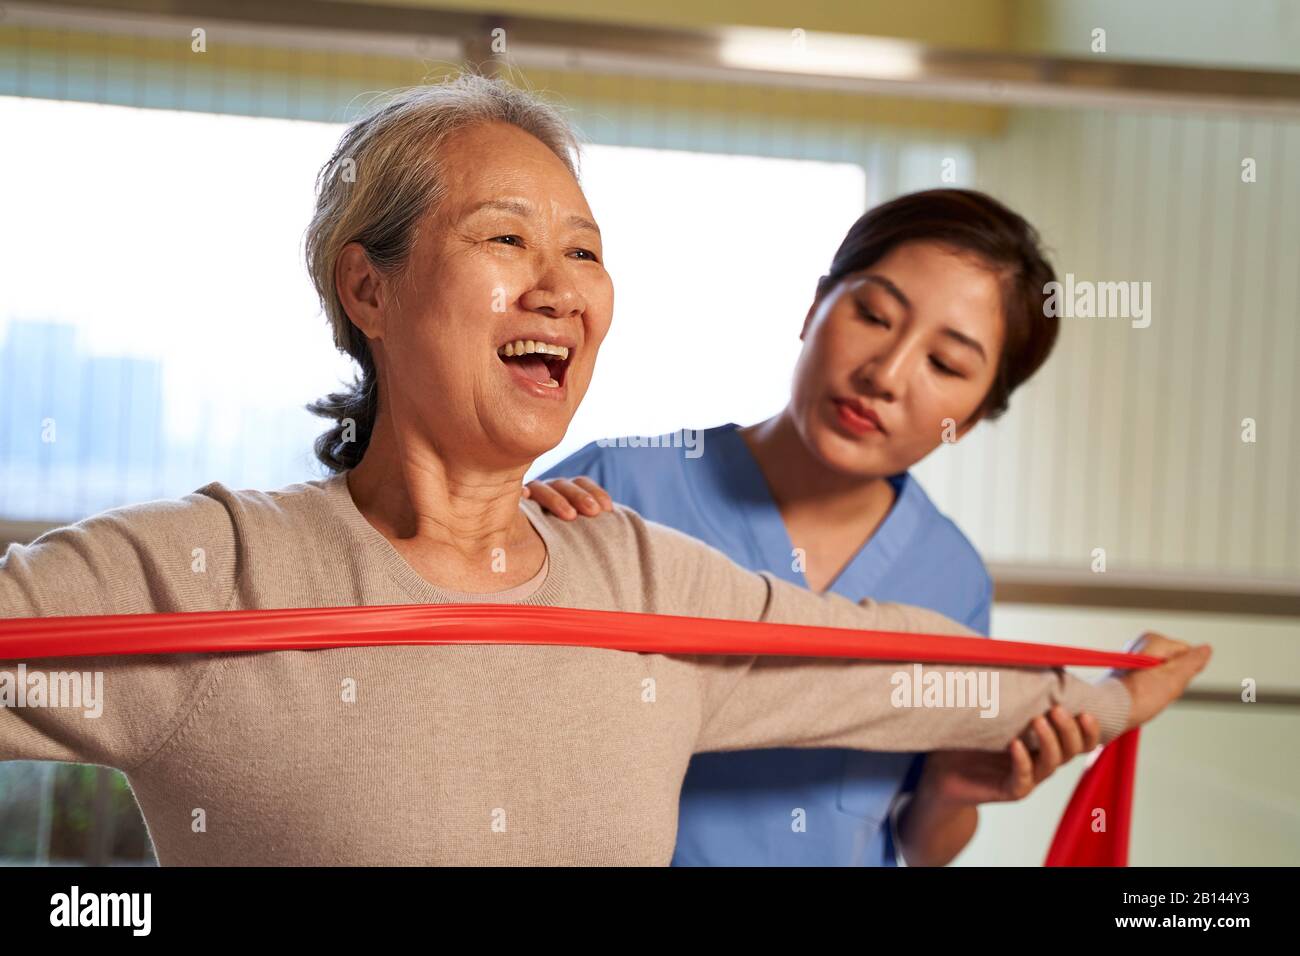 Glückliche ältere asiatische Frau, die mit einer Widerstandsband trainiert, die von einem physischen Therapeuten im Reha-Zentrum geleitet wird Stockfoto